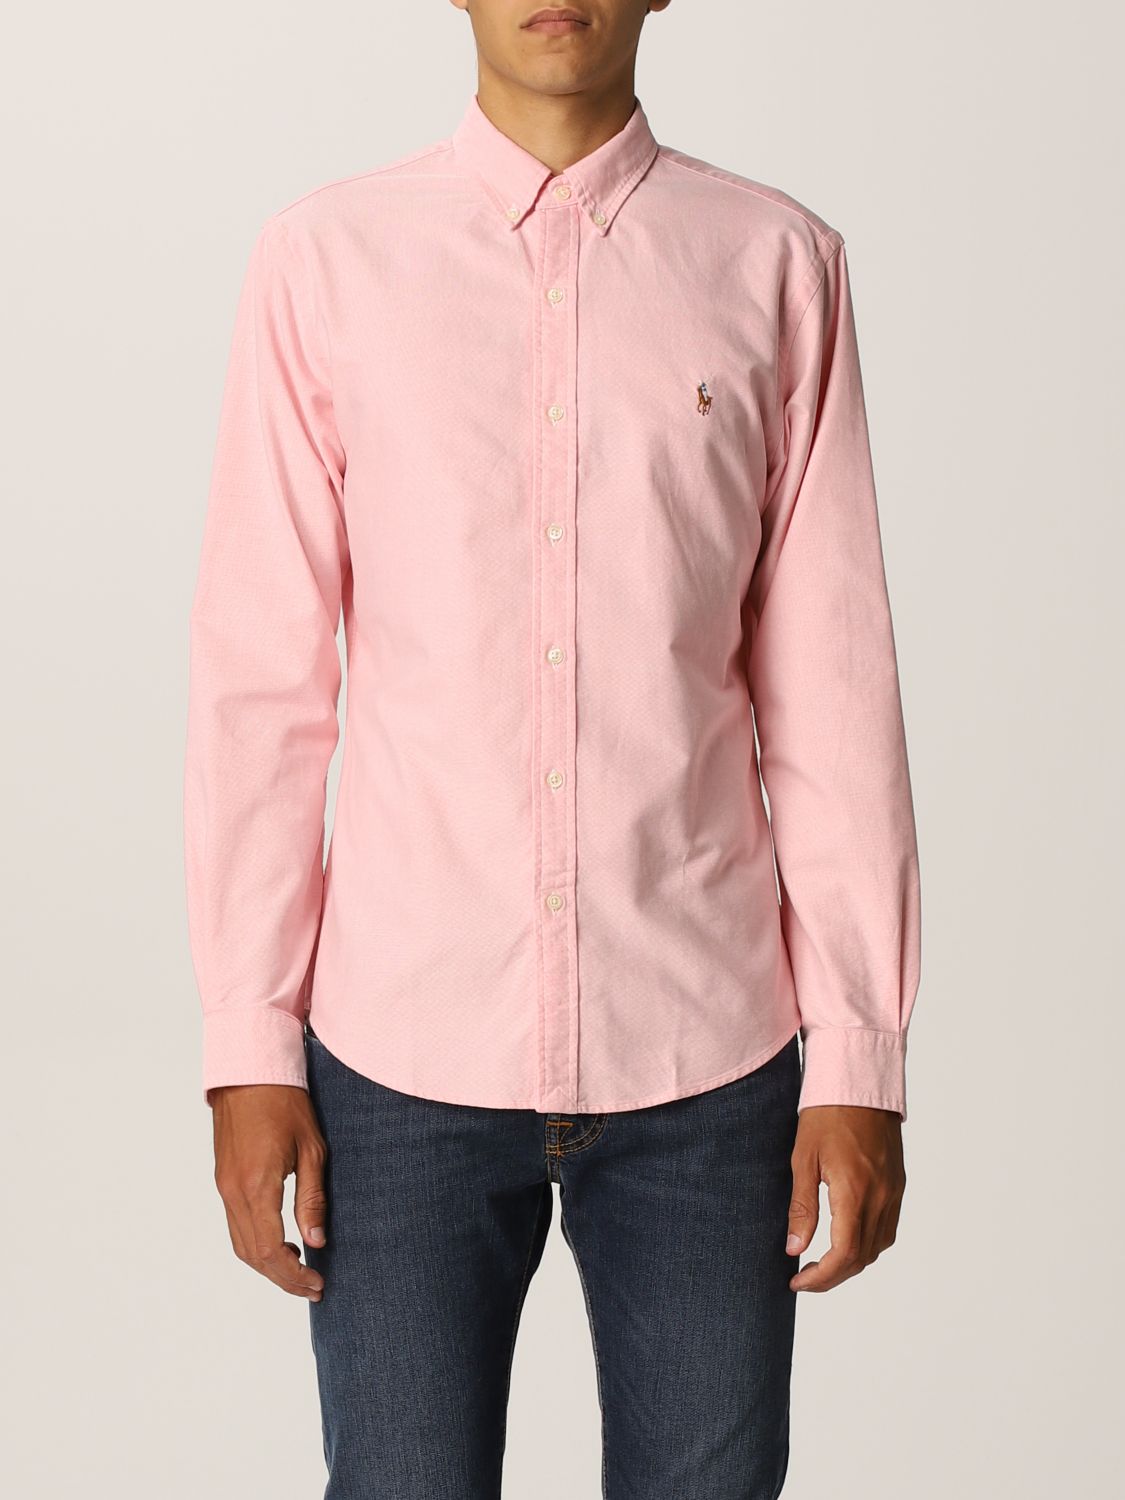 POLO RALPH LAUREN: cotton shirt - Pink | Polo Ralph Lauren shirt 